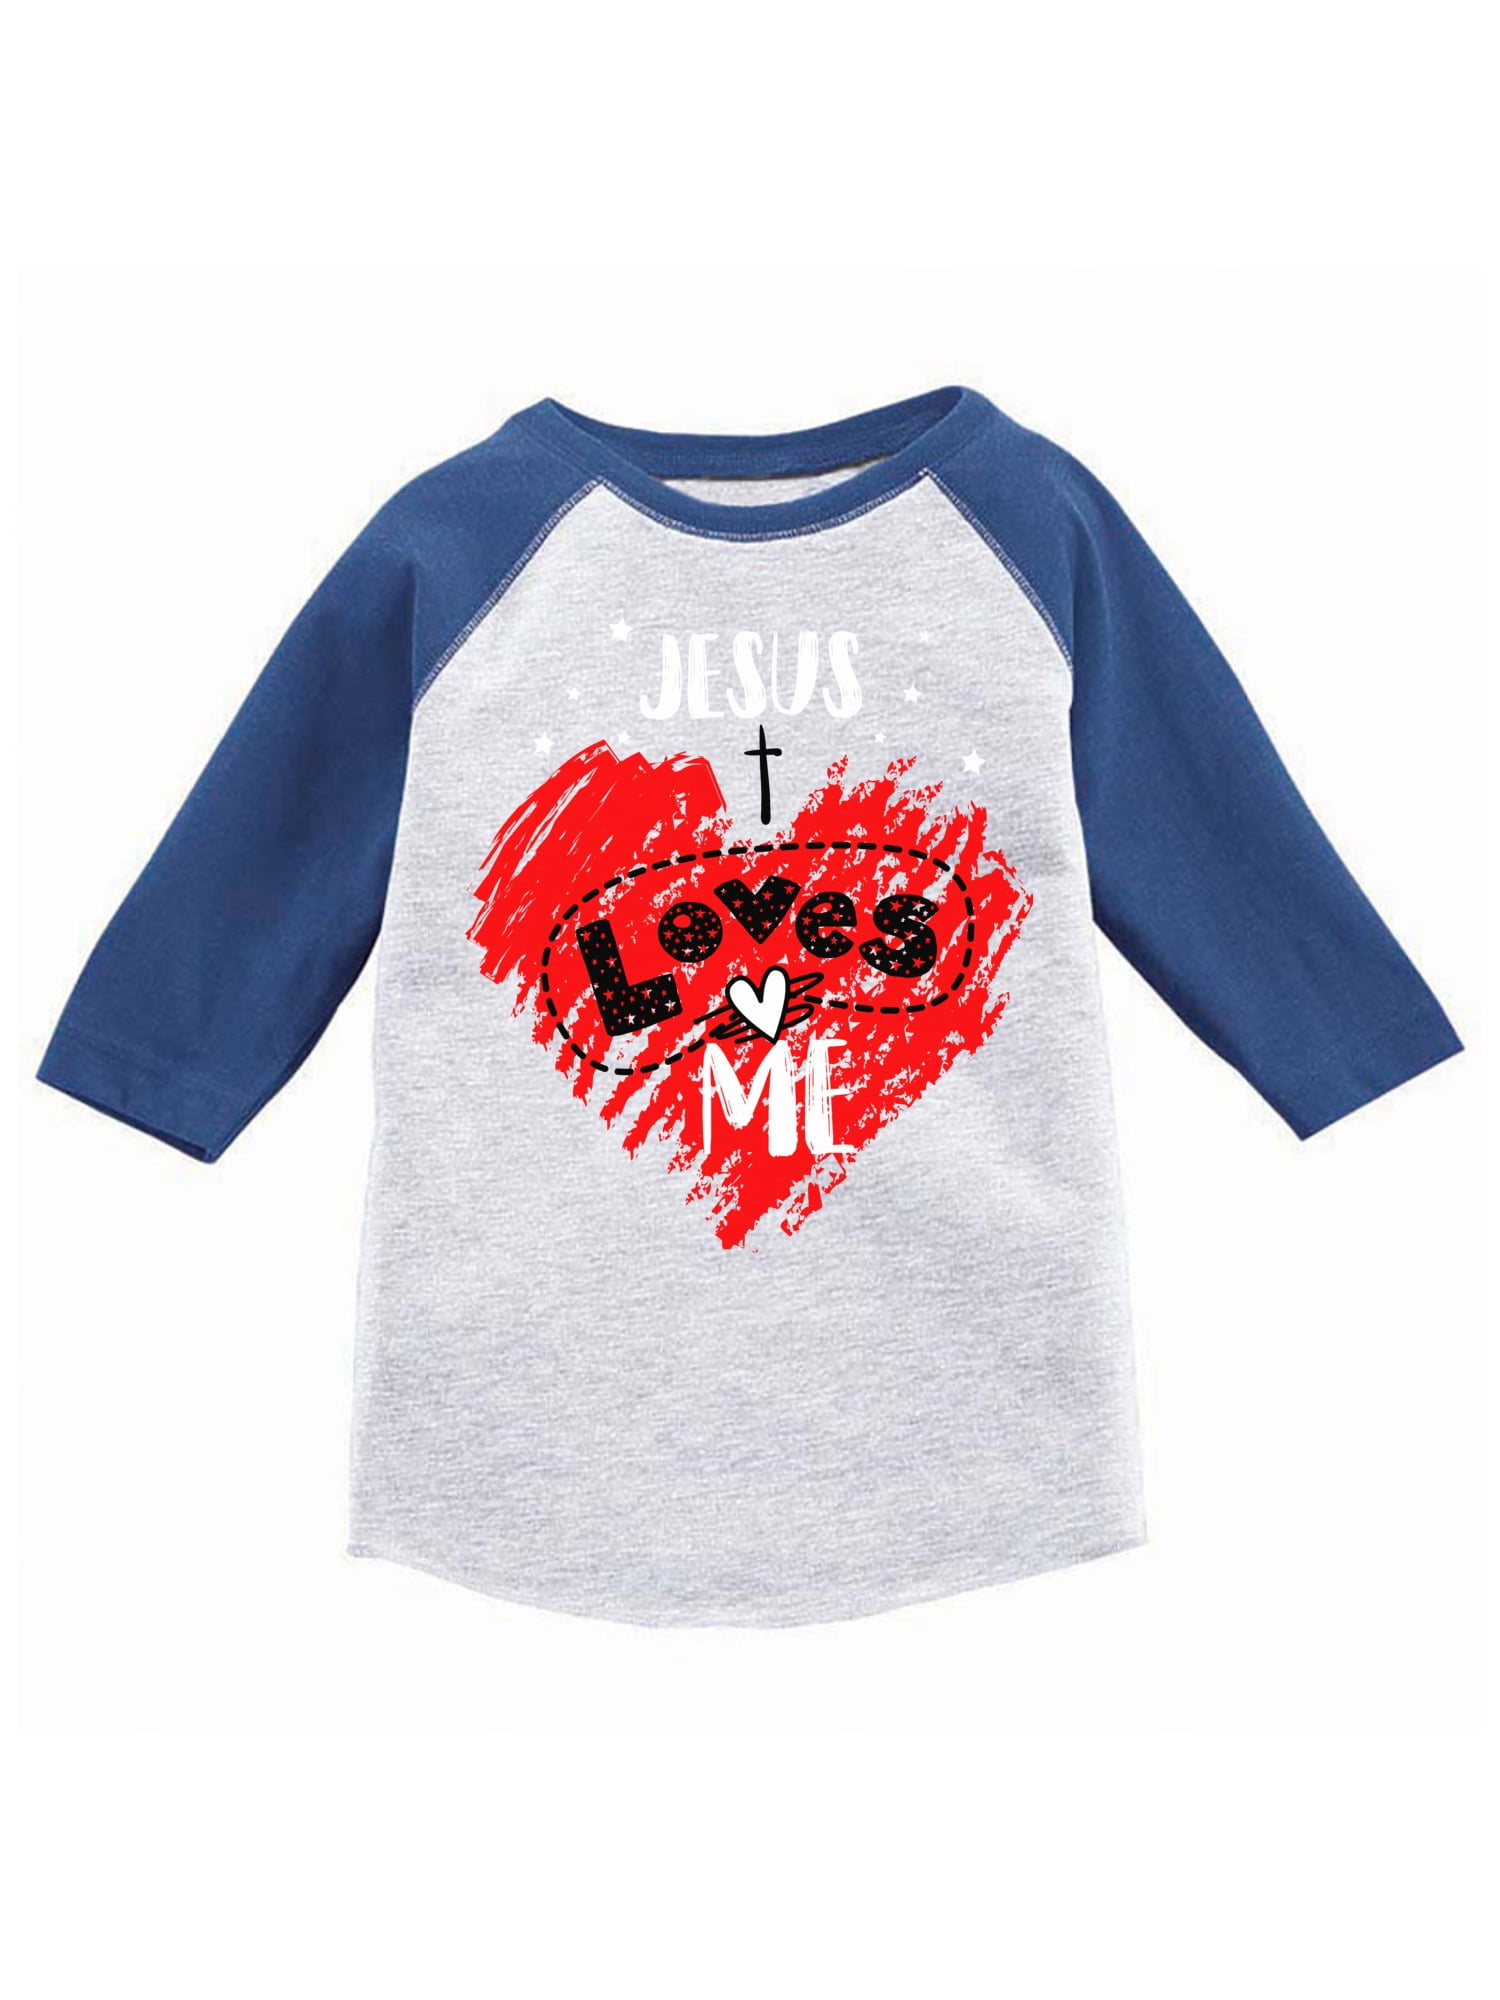 Toddler/Kids Raglan T-Shirt My Mimi in Massachusetts Loves Me 